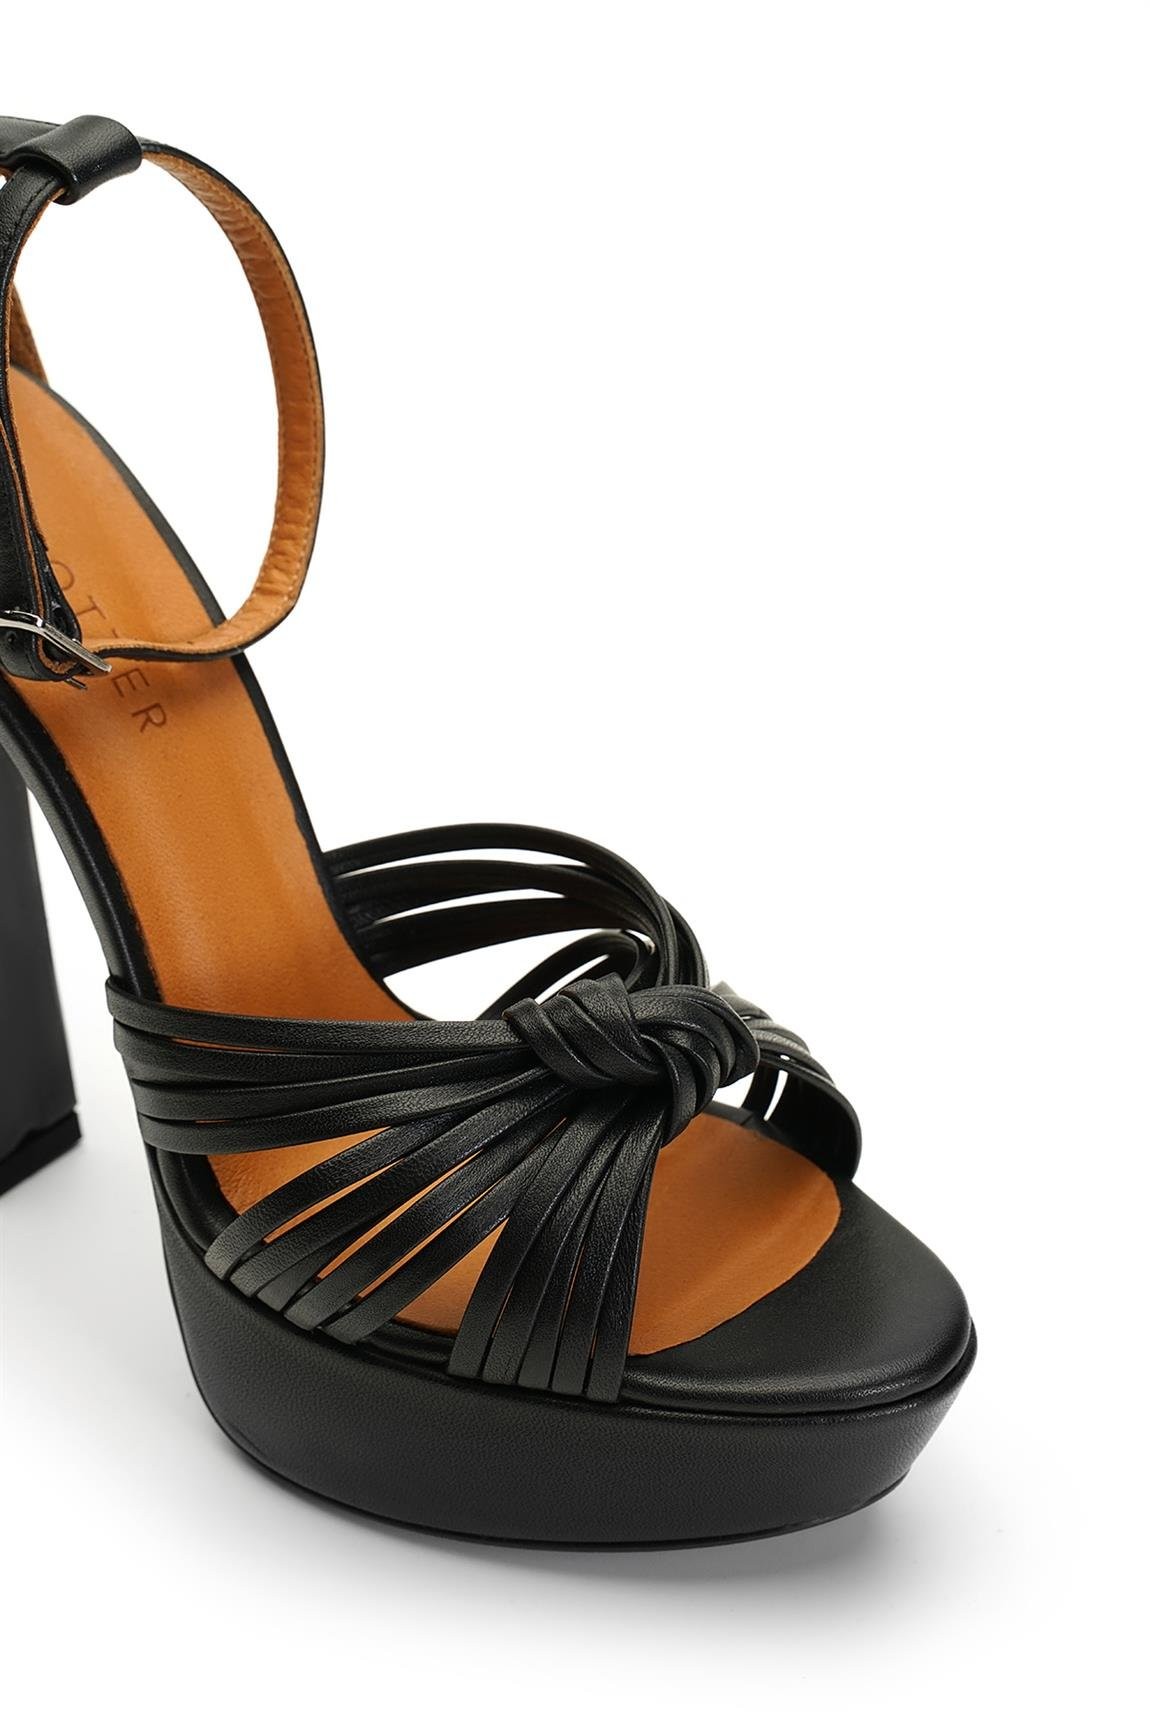 Jabotter Gwen Siyah Deri Platform Topuklu Ayakkabı